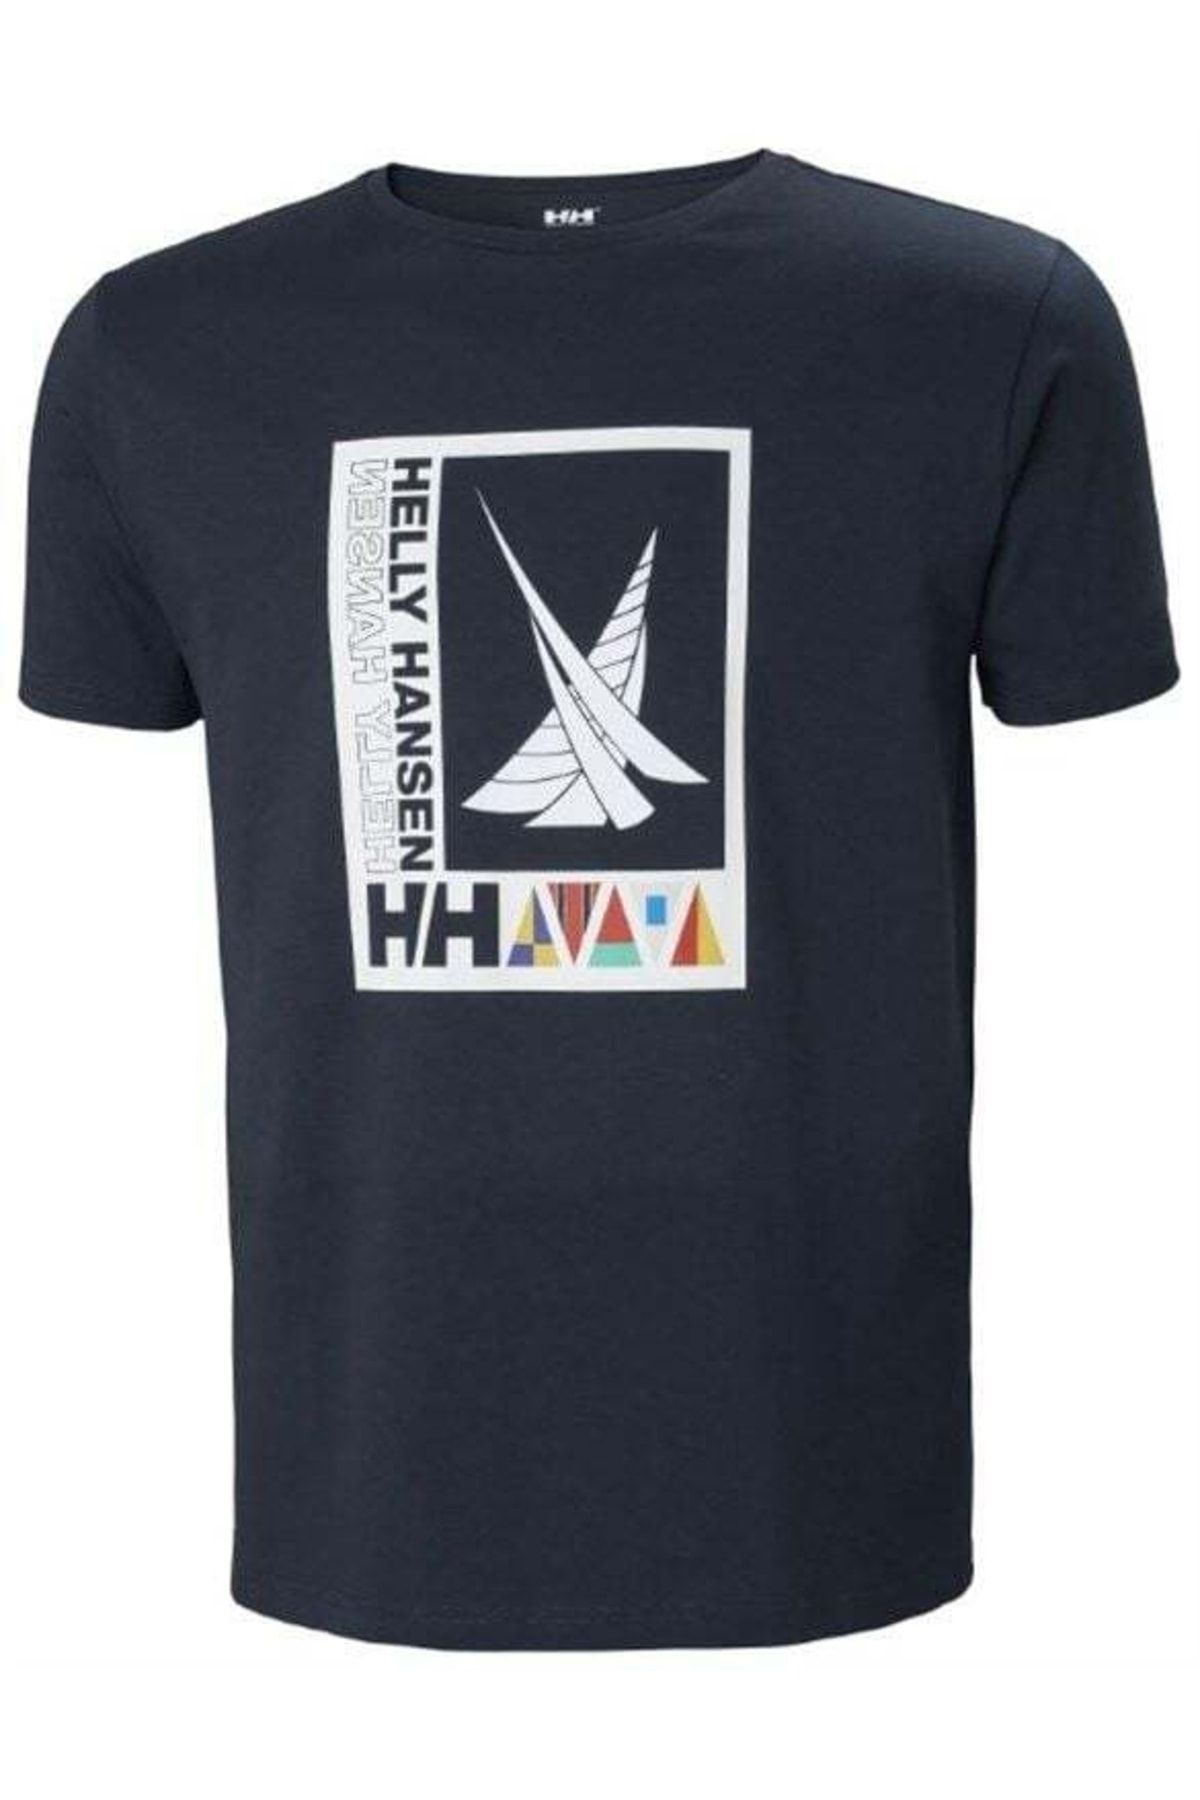 Helly Hansen Shoreline T-shirt